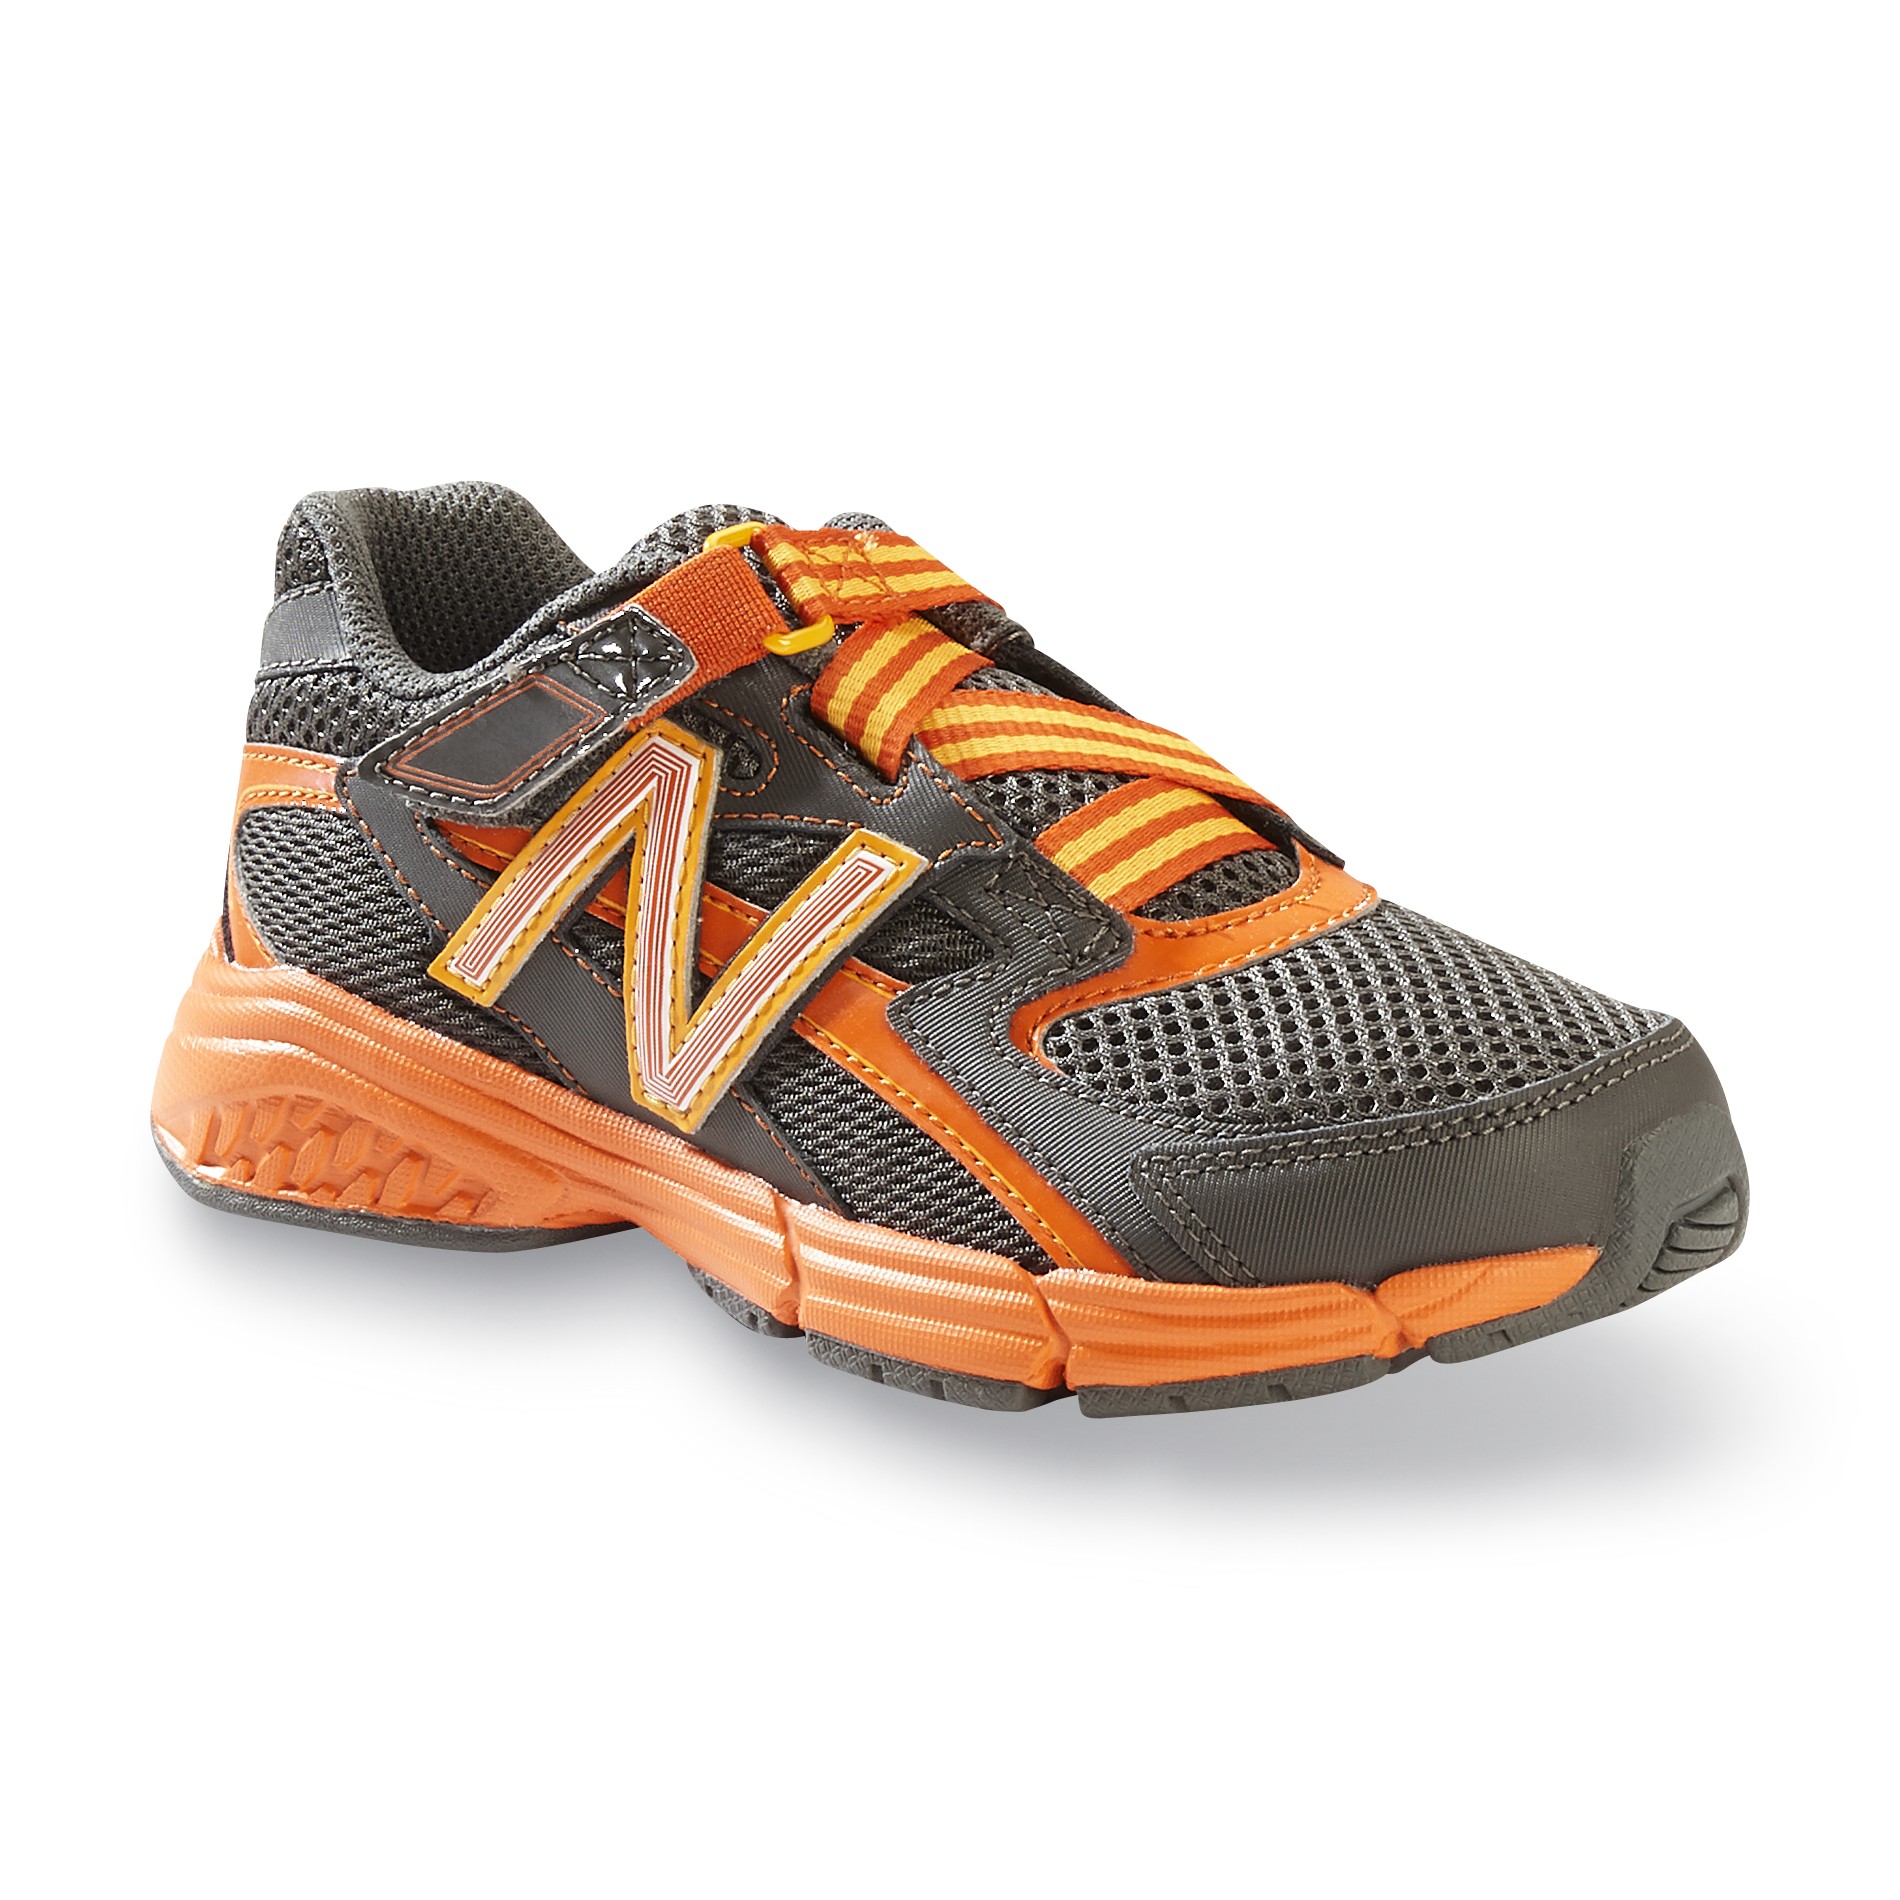 New Balance Boy's 513 Athletic Shoe - Grey/Orange